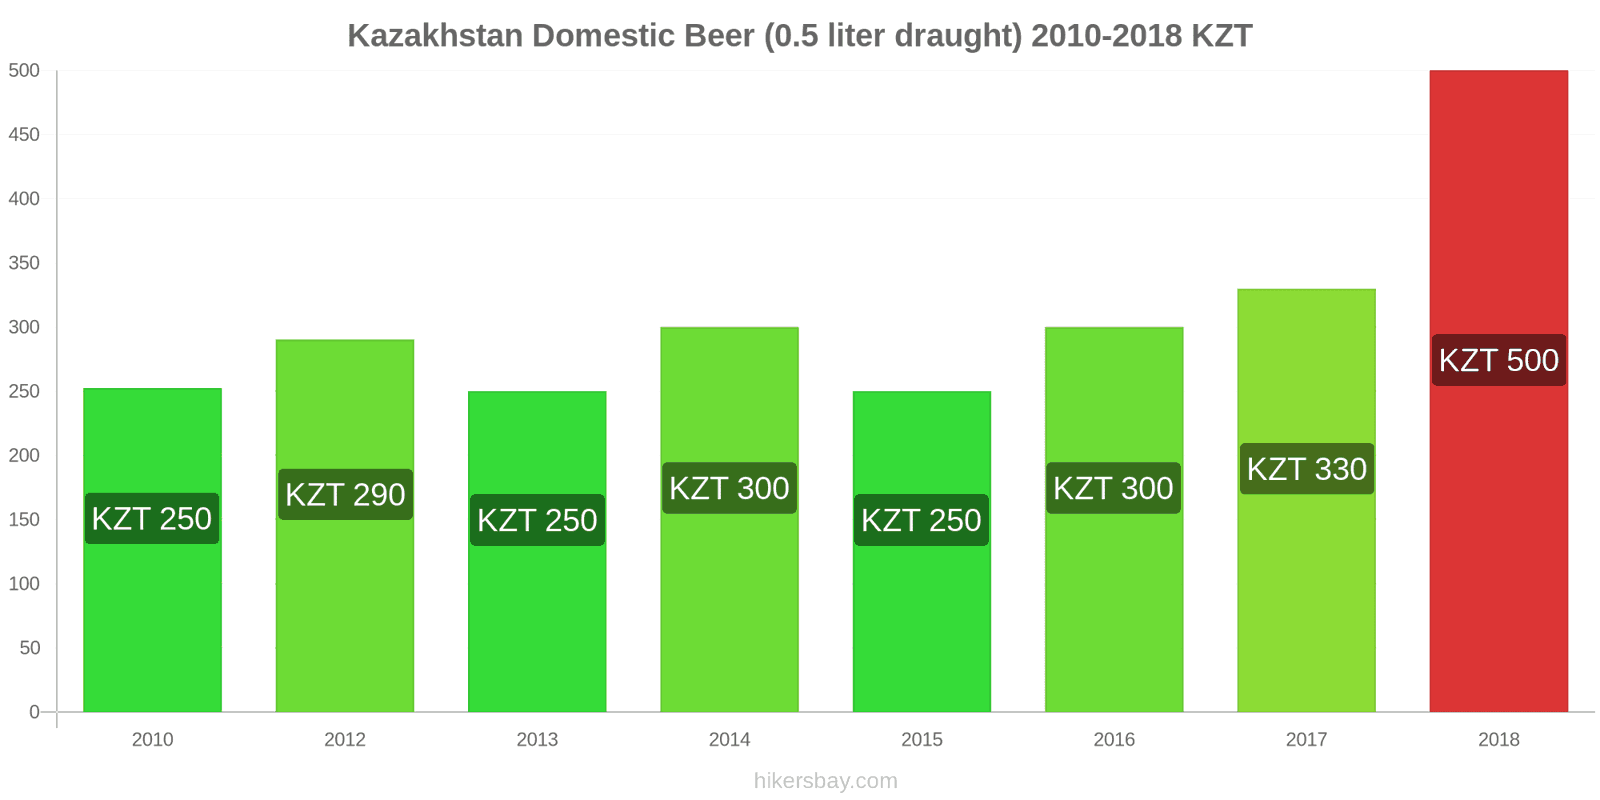 Kazakhstan price changes Domestic Beer (0.5 liter draught) hikersbay.com